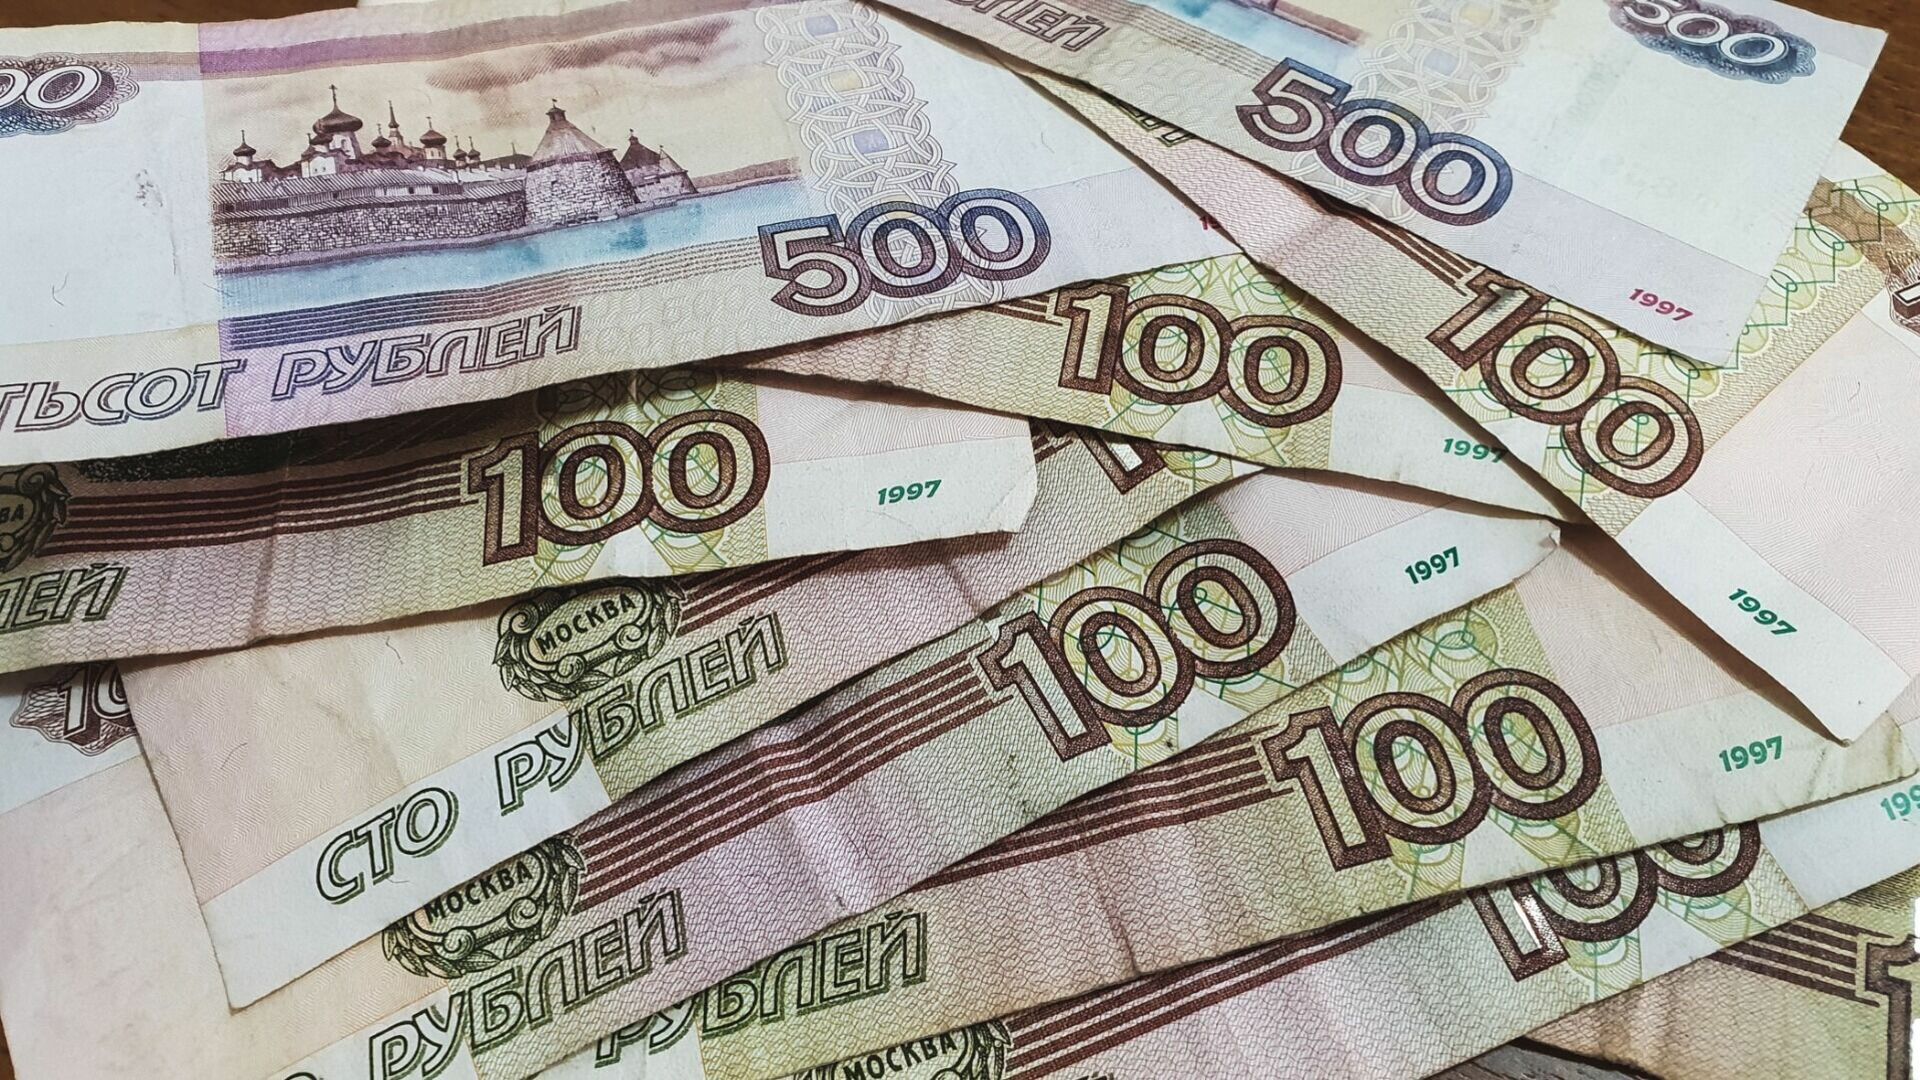 Три пенсионерки потеряли миллион рублей из-за курьера в Нижнем Новгороде